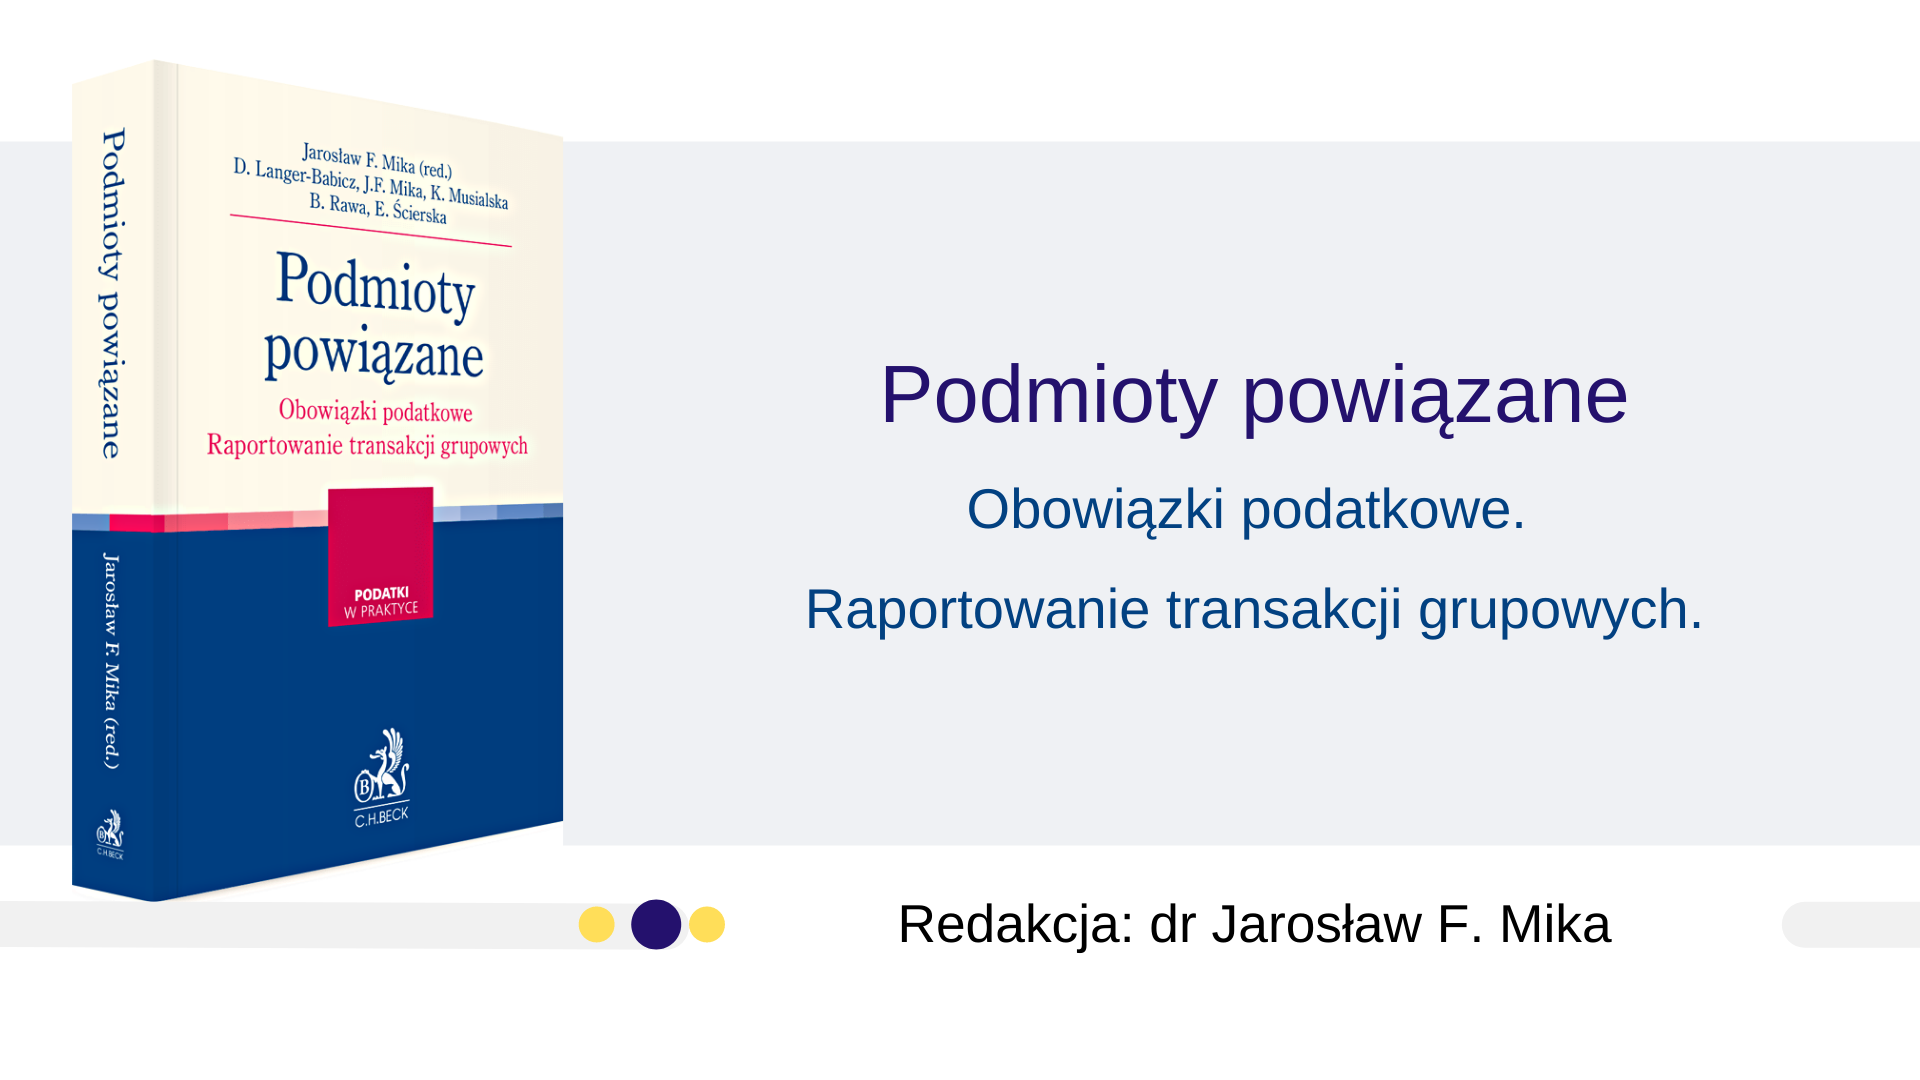 Podmioty powiązane. Obowiązki podatkowe. Raportowanie transakcji grupowych - Jarosław F. Mika